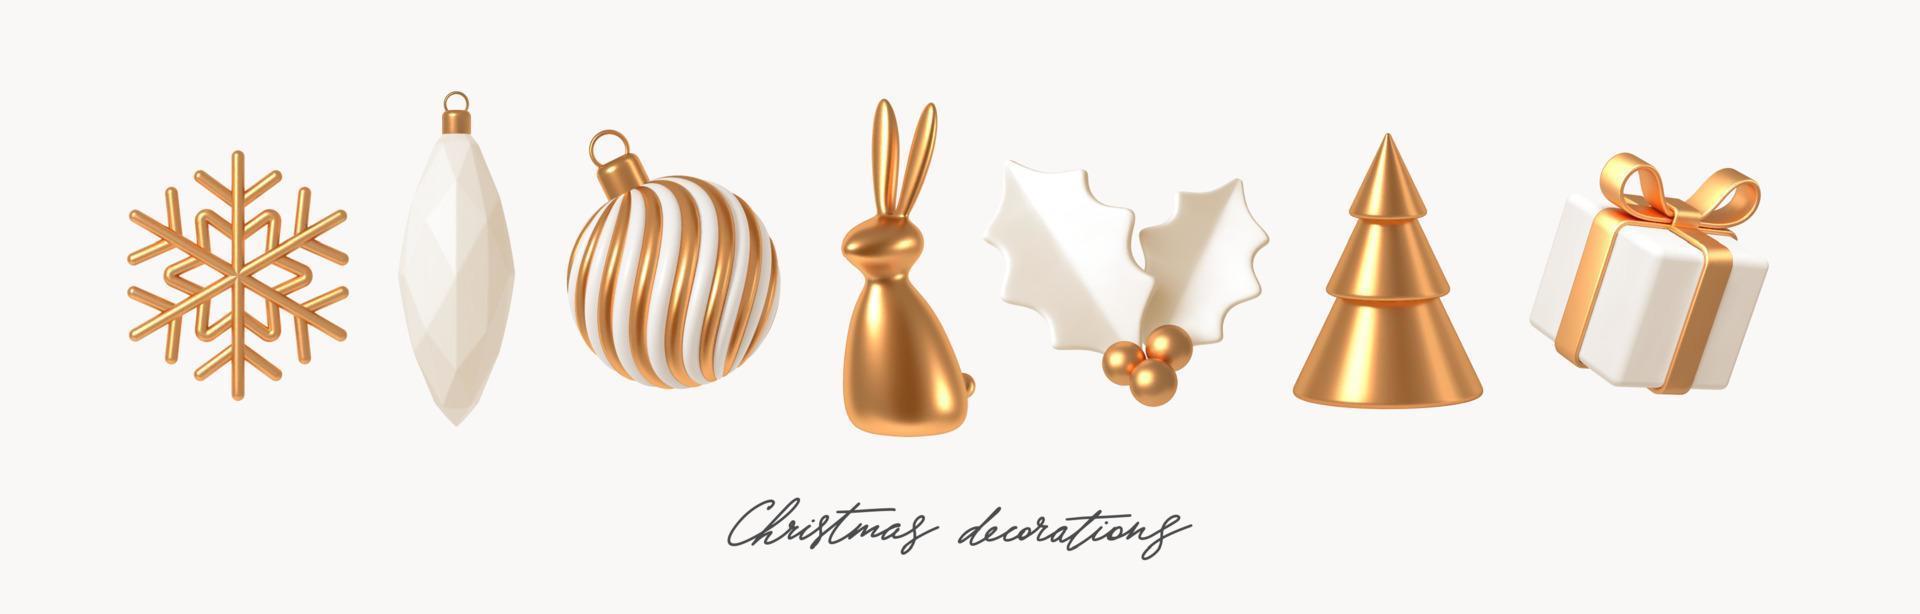 impostato di bianca e oro realistico Natale decorazioni. 3d rendere vettore illustrazione. design elementi per saluto carta o invito.